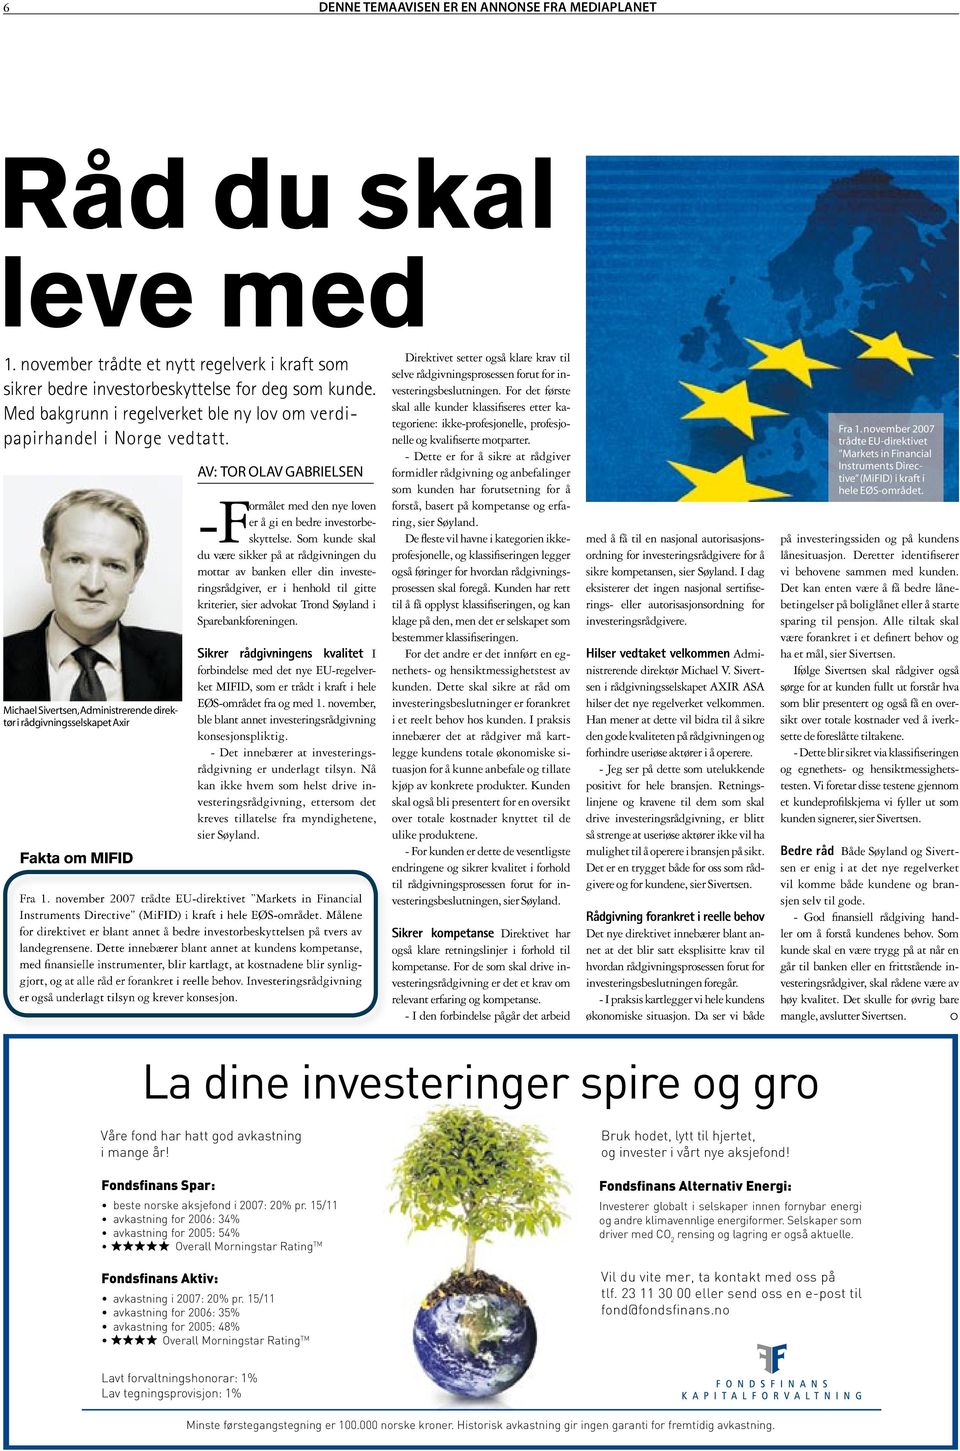 Michael Sivertsen, Administrerende direktør i rådgivningsselskapet Axir Fakta om MIFID AV: TOR OLAV GABRIELSEN med den nye loven er å gi en bedre investorbeskyttelse.